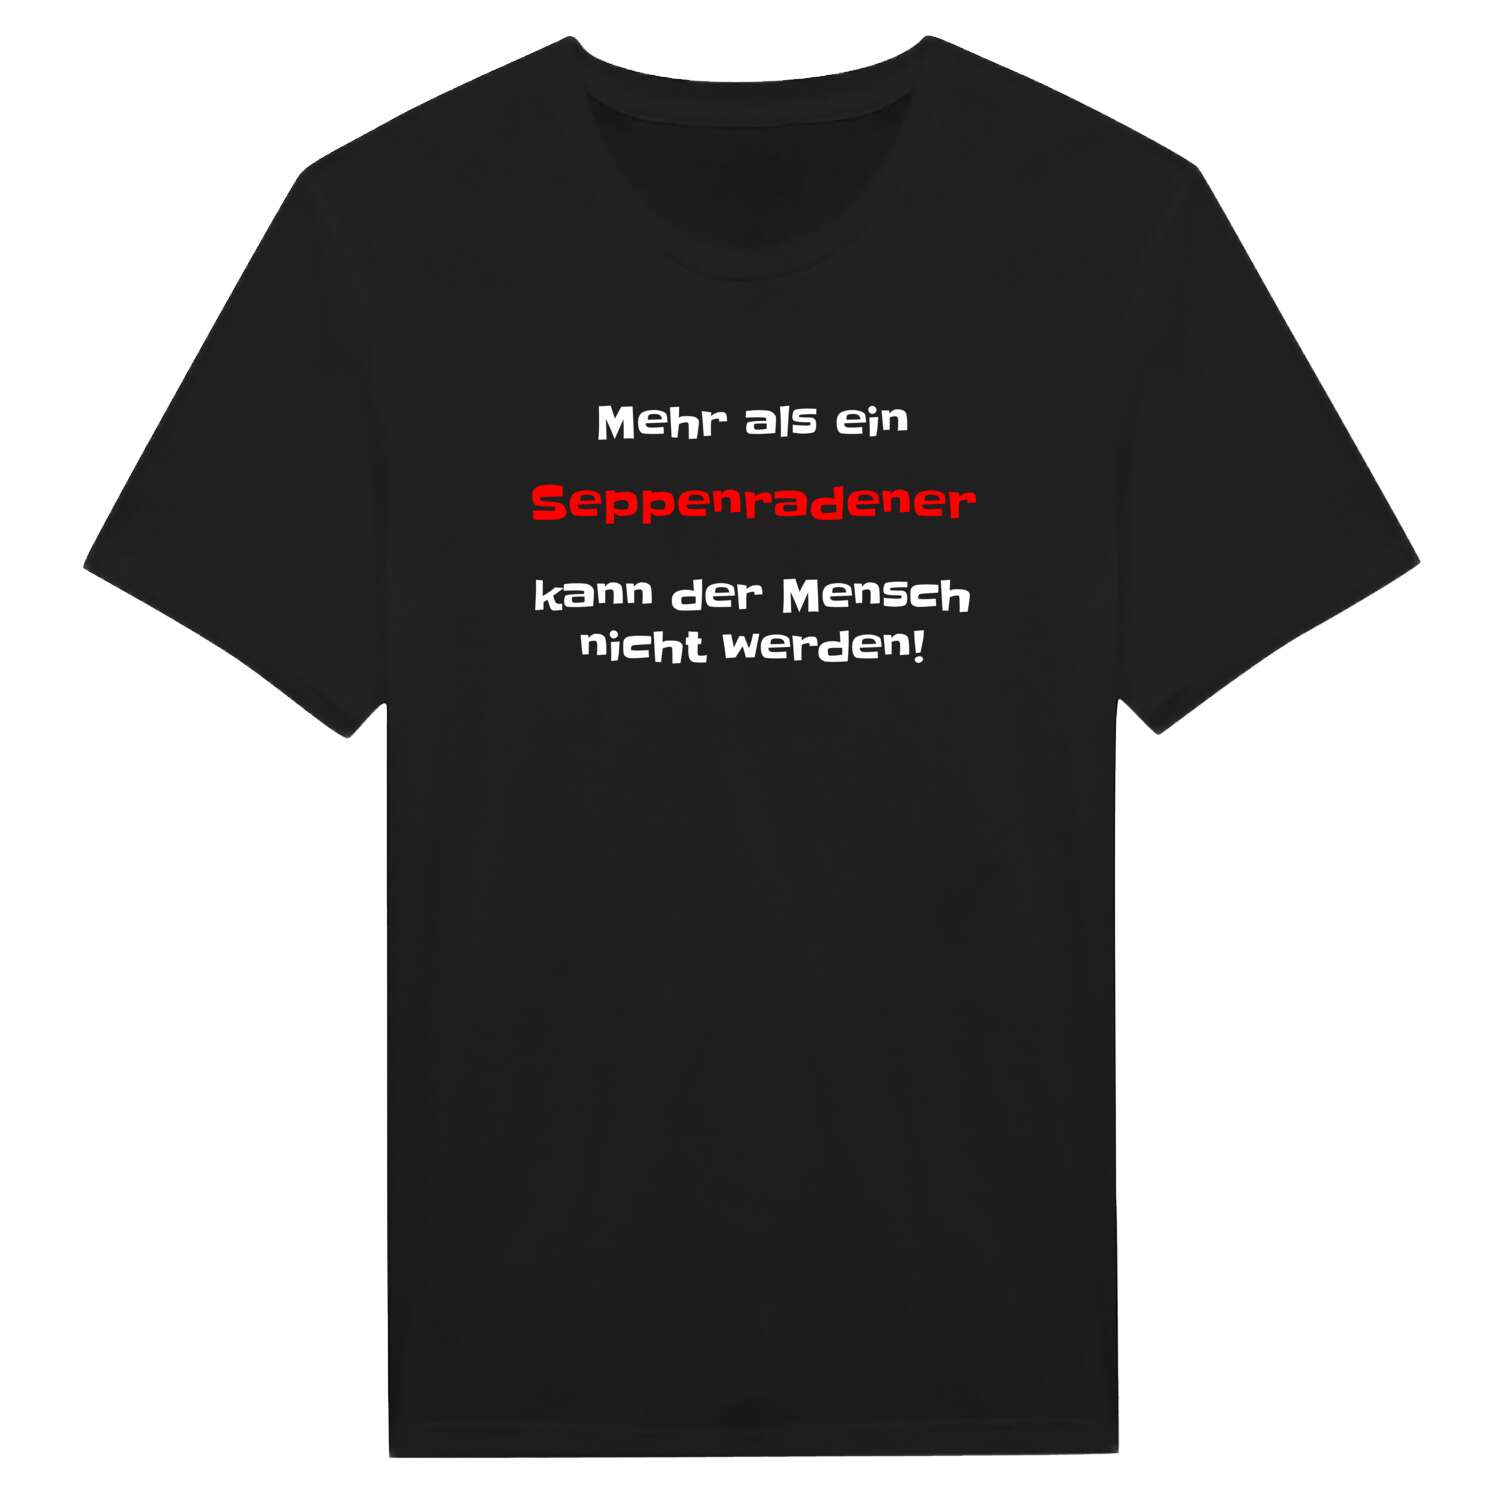 Seppenrade T-Shirt »Mehr als ein«